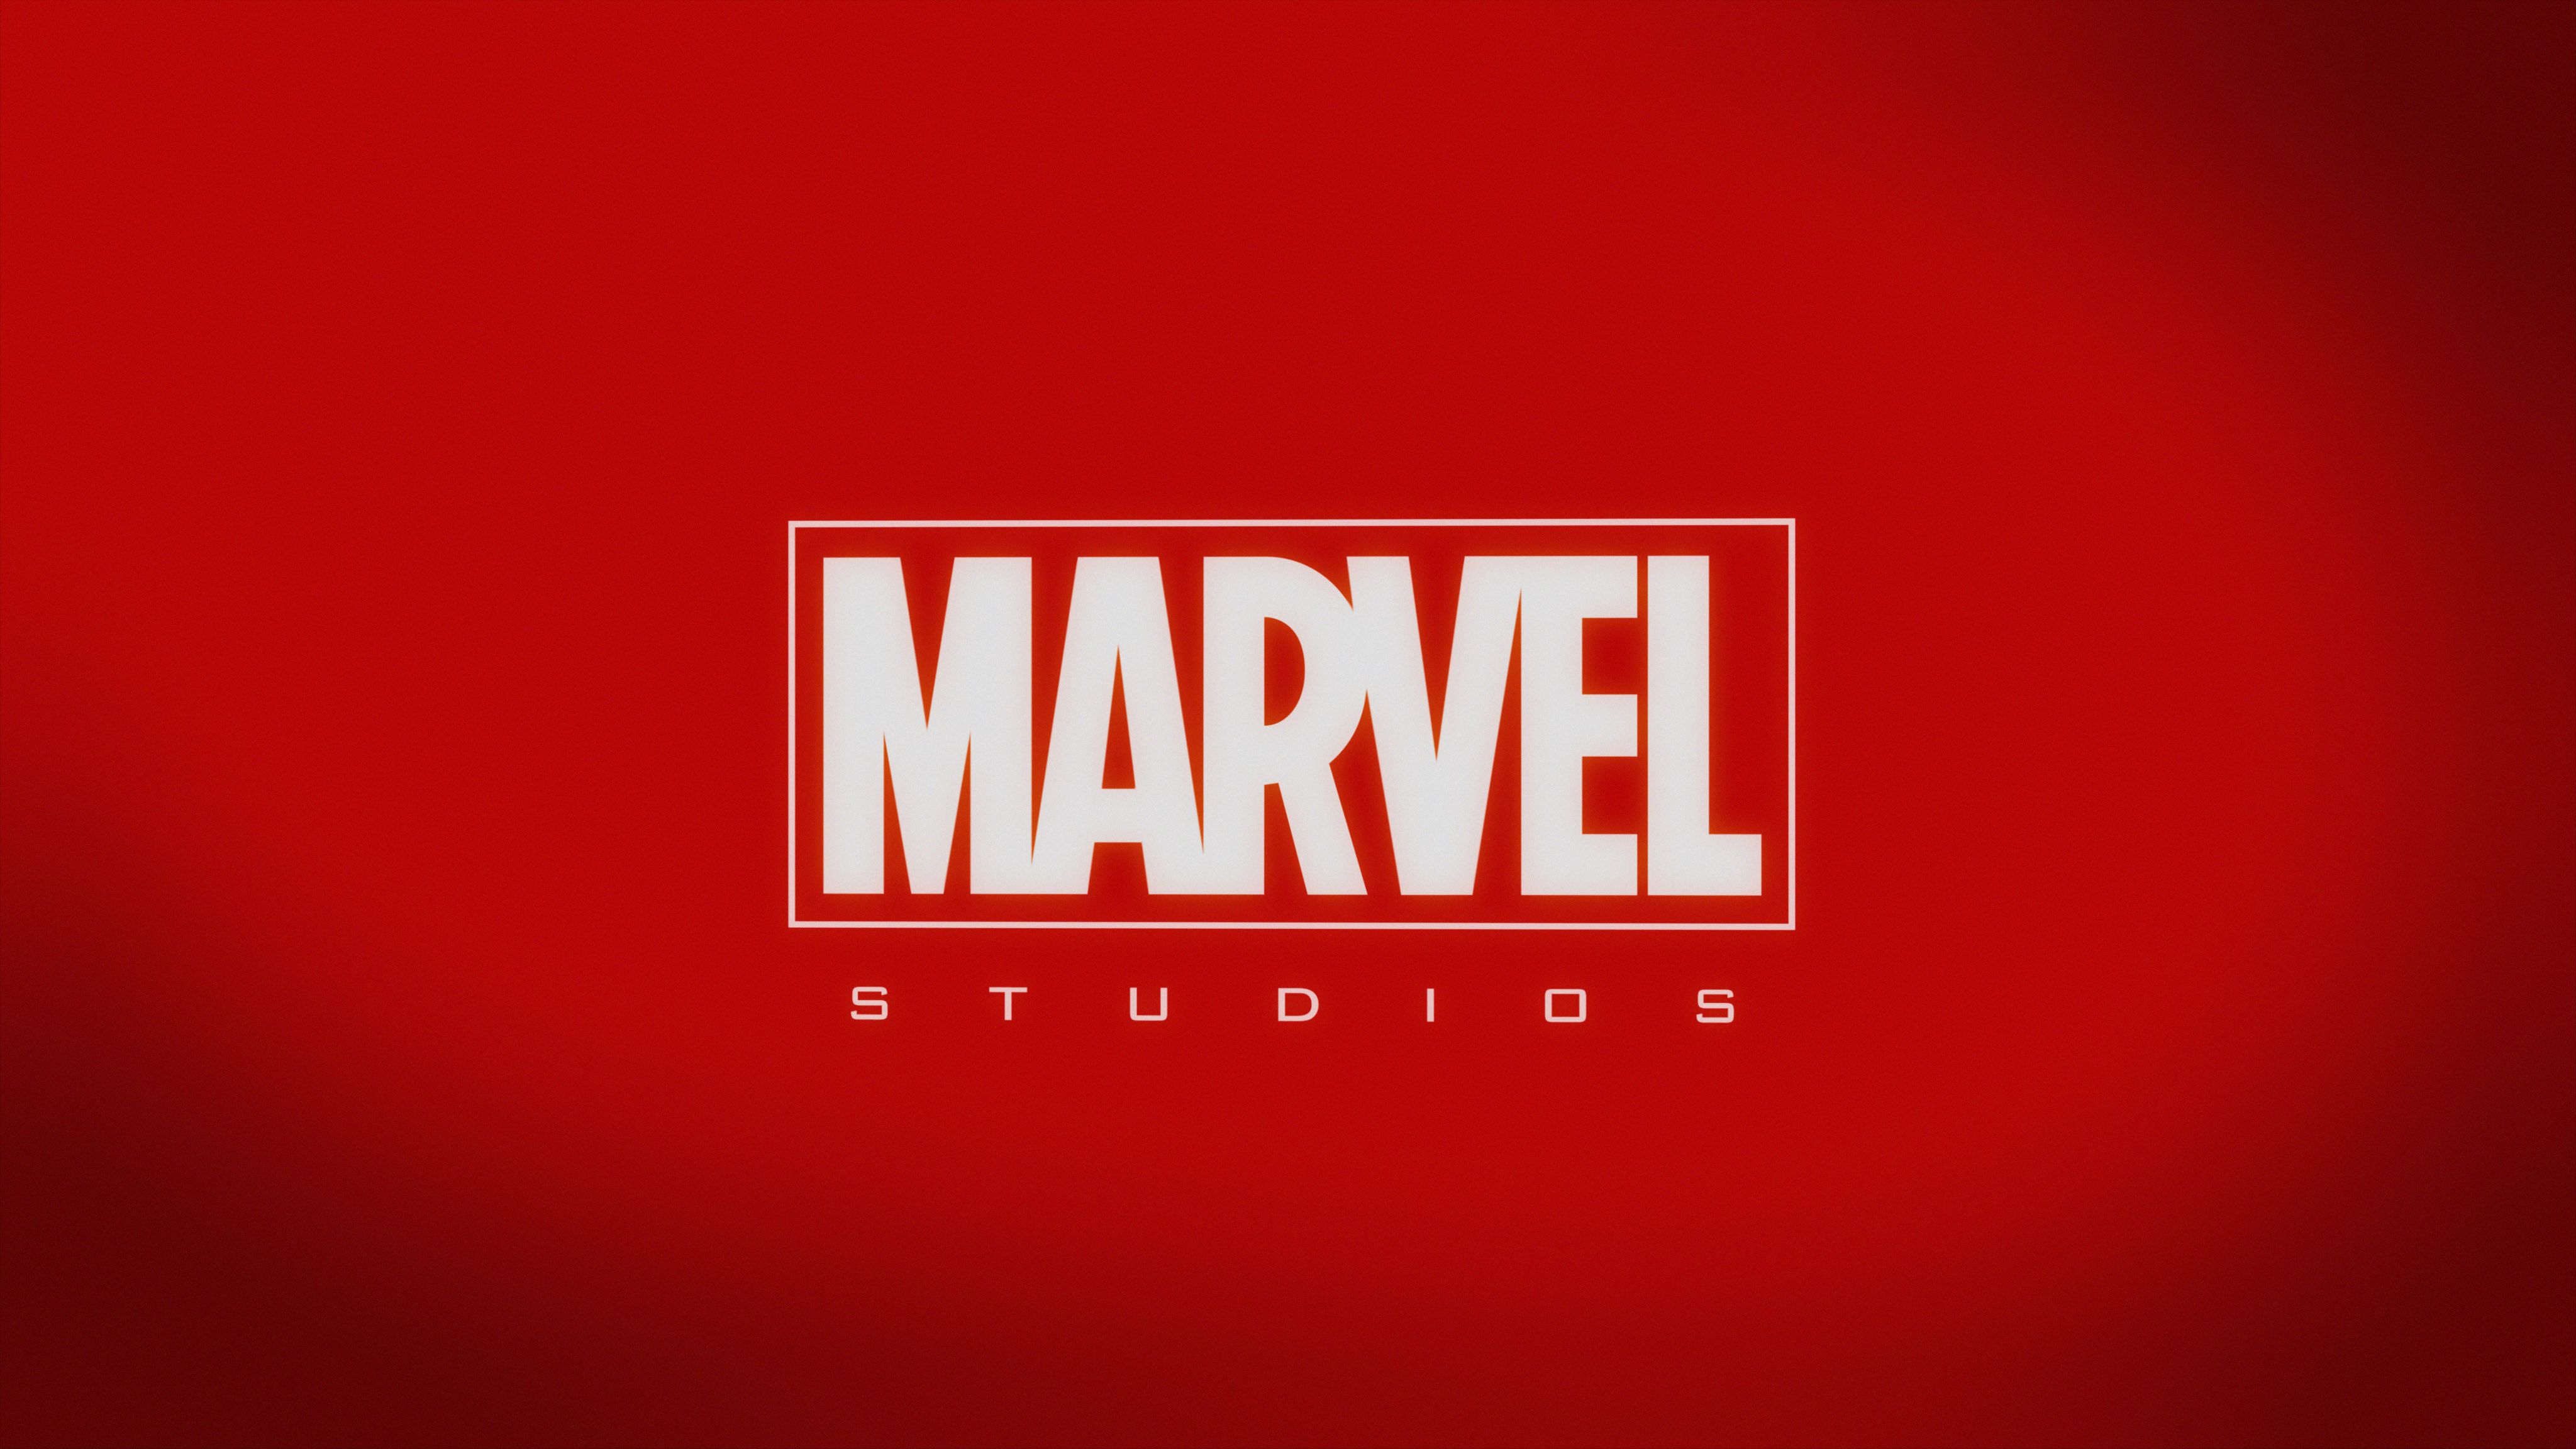 Wallpaper Marvel Studios, HD, 4K. Marvel studios, Marvel studios logo, Marvel wallpaper